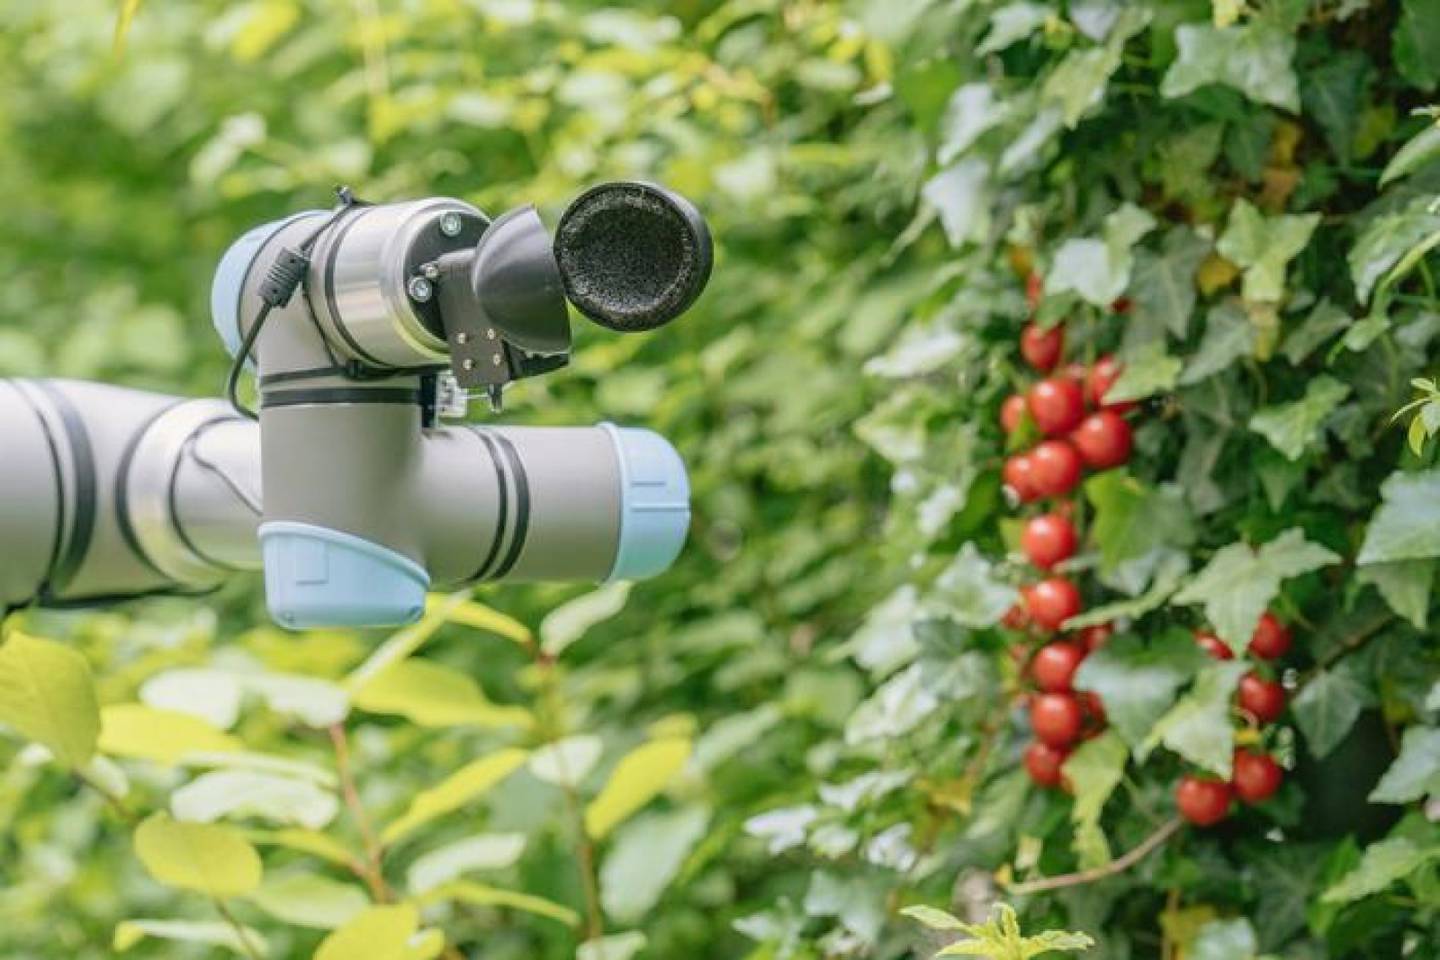 El robot recolector de tomates